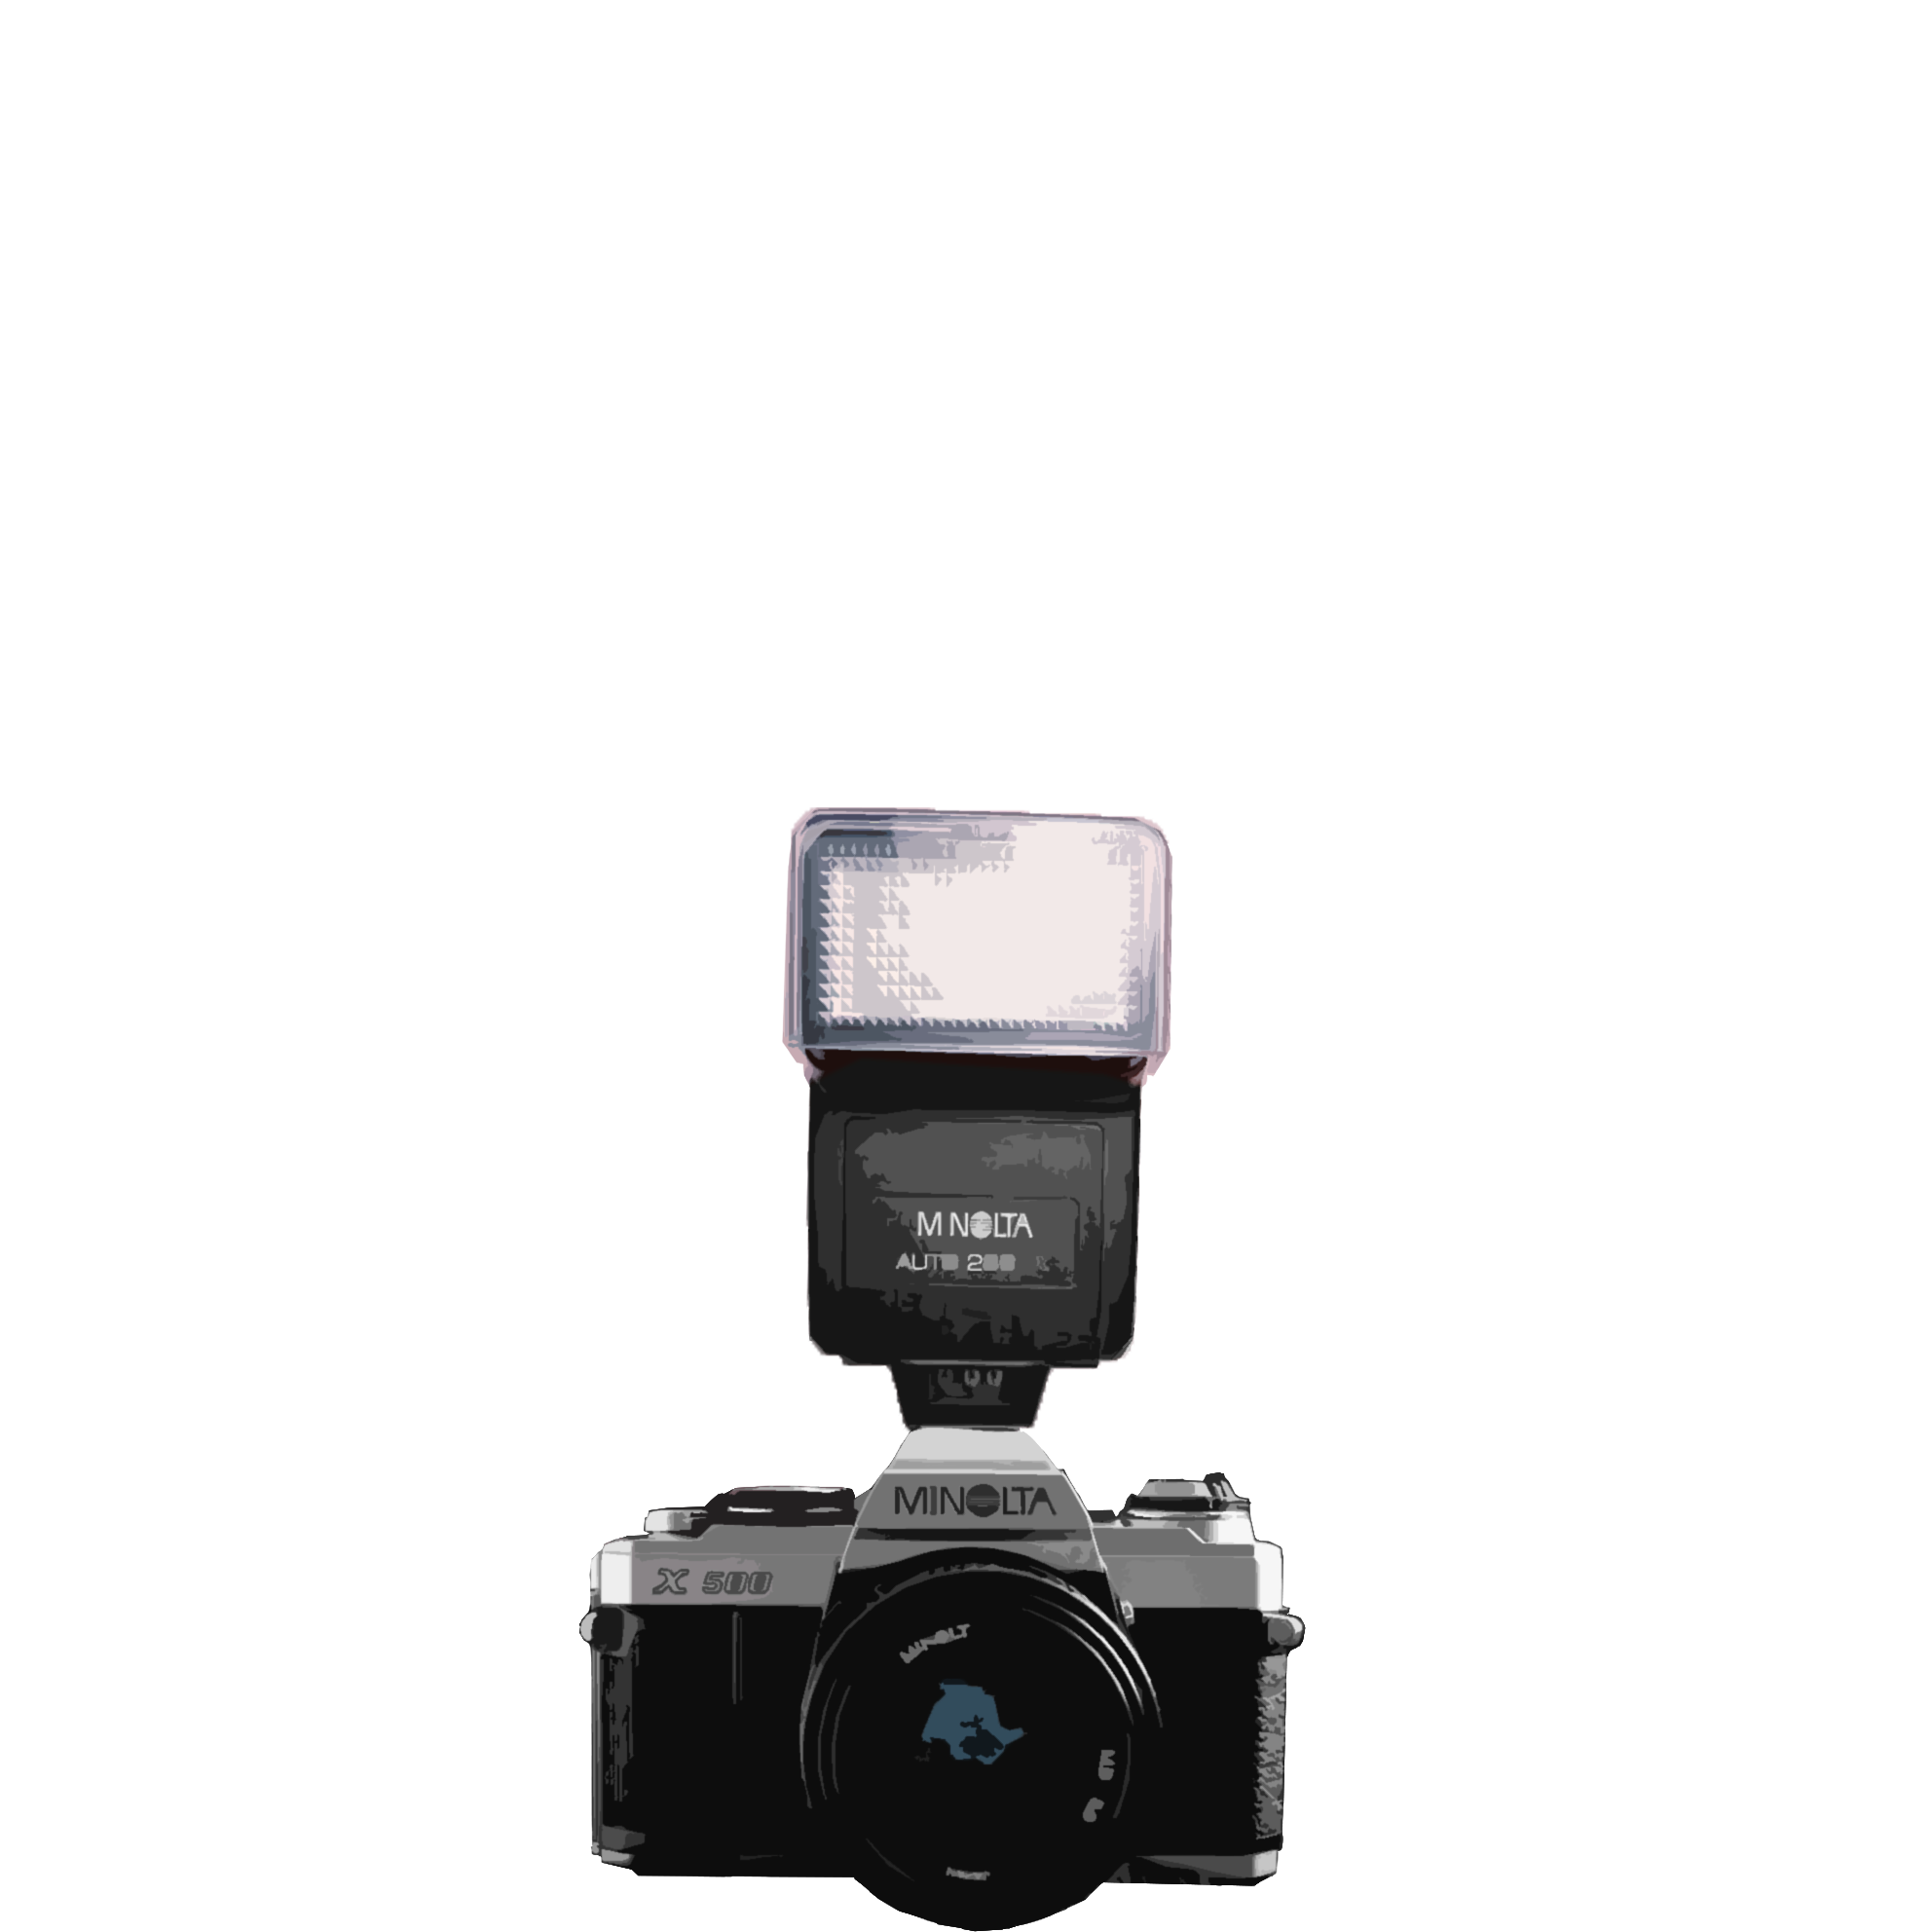 Ein Foto von eine Analog Kamera Marke Minolta, wenn man clickt sieht so aus als der Kamera Blitz. Das Bild ist in Photoshop mit Effekte bearbeitet worden. Früher habe ich eine Fotokamera Minolta.